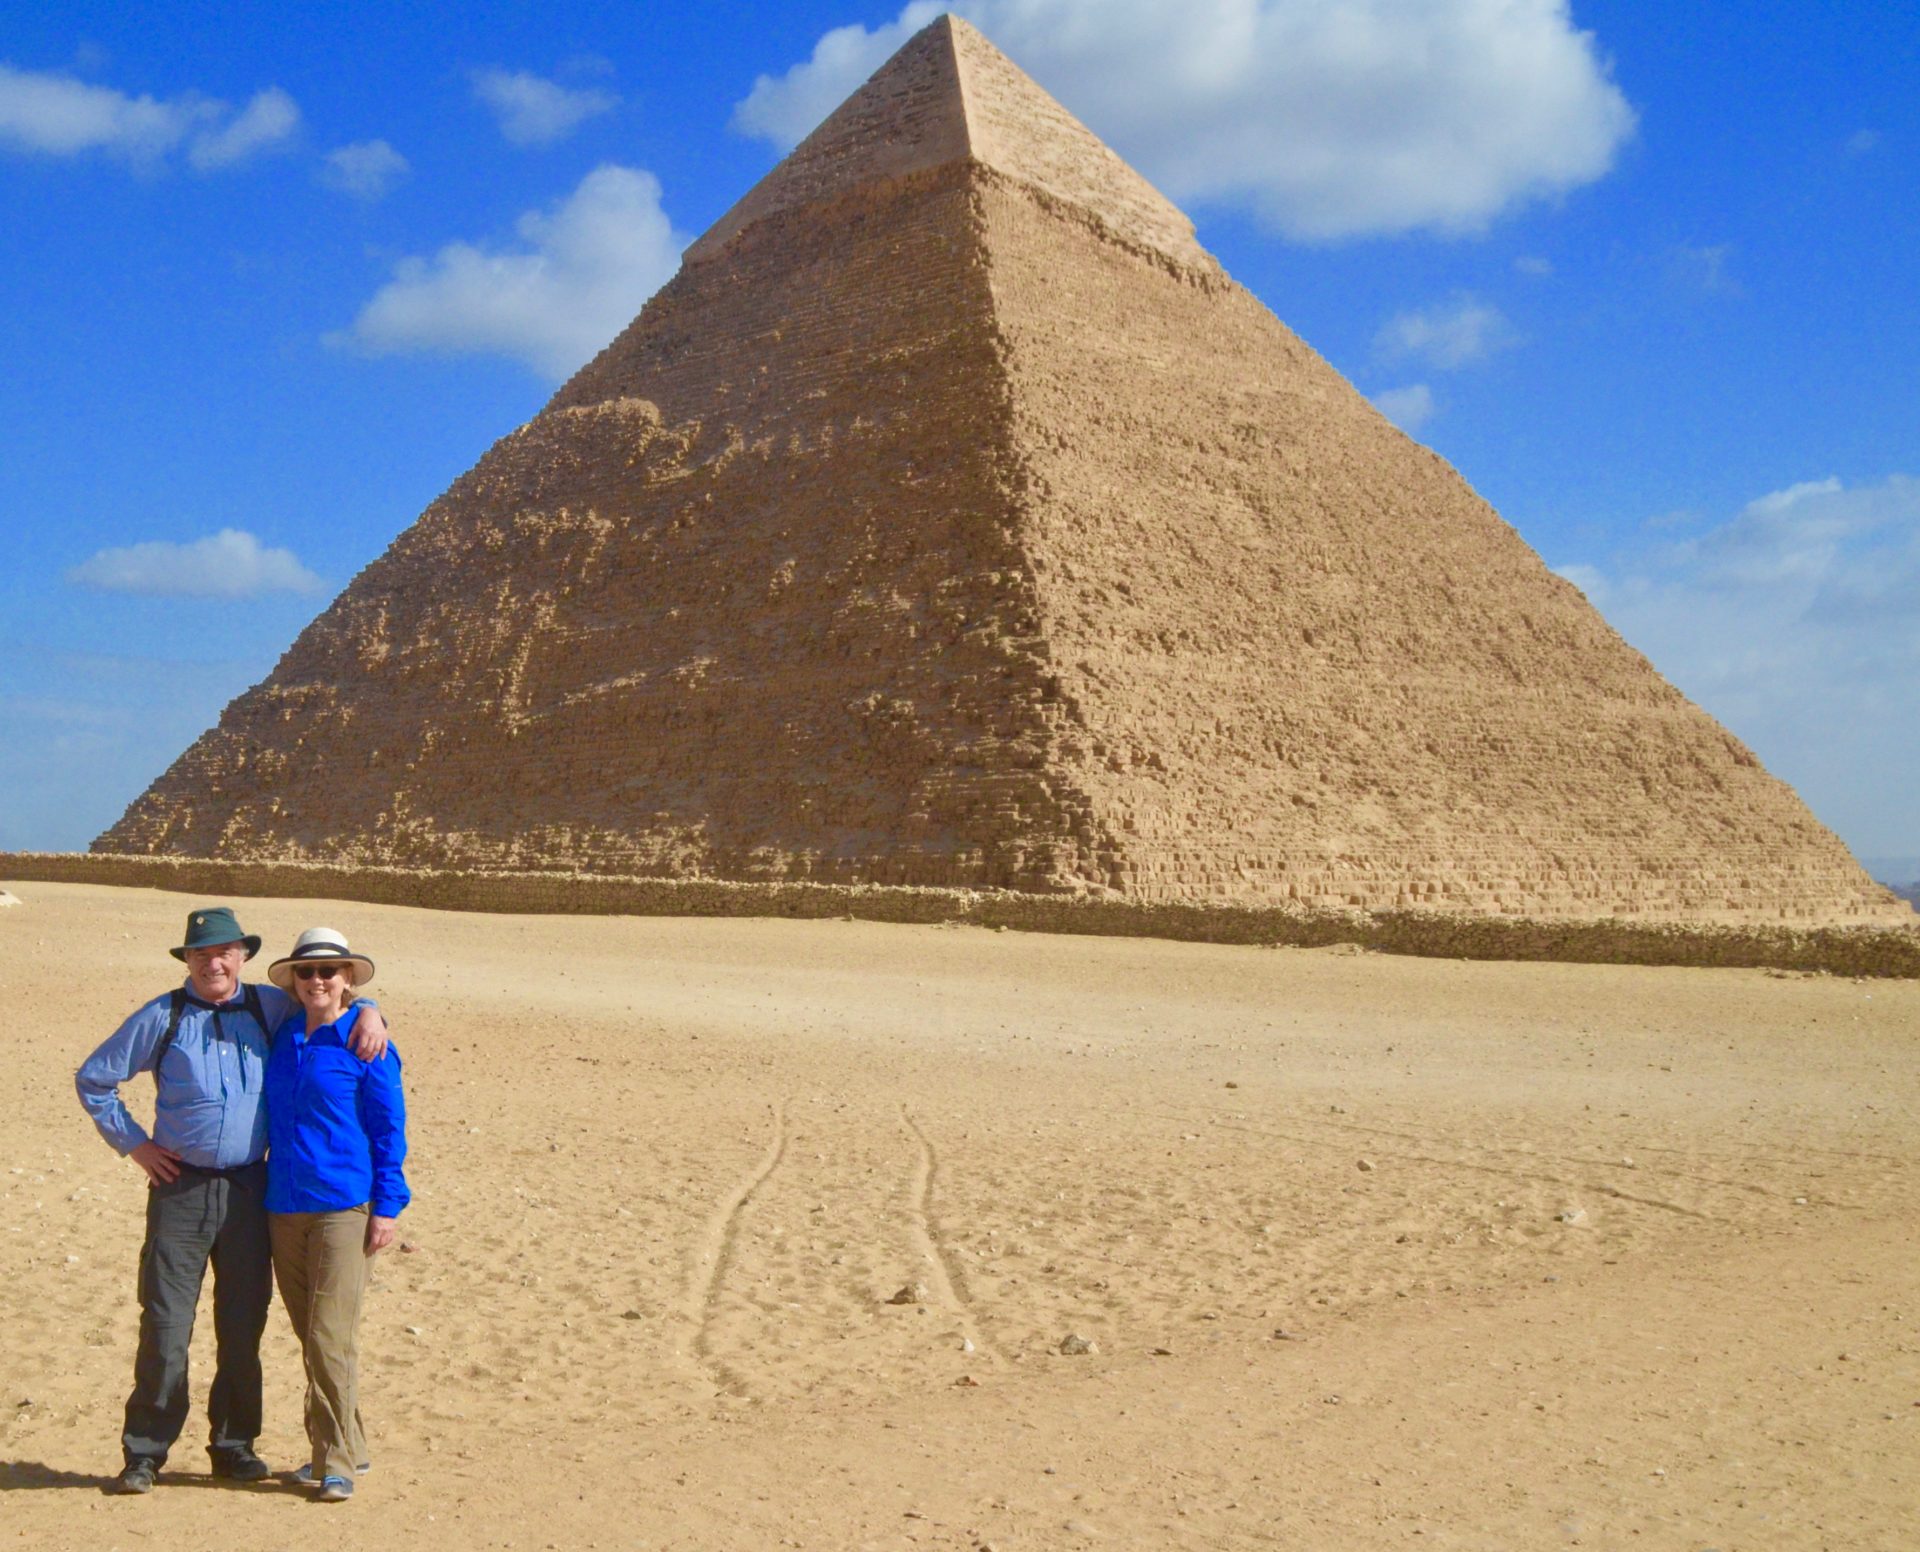 At the Pyramid of Khafre